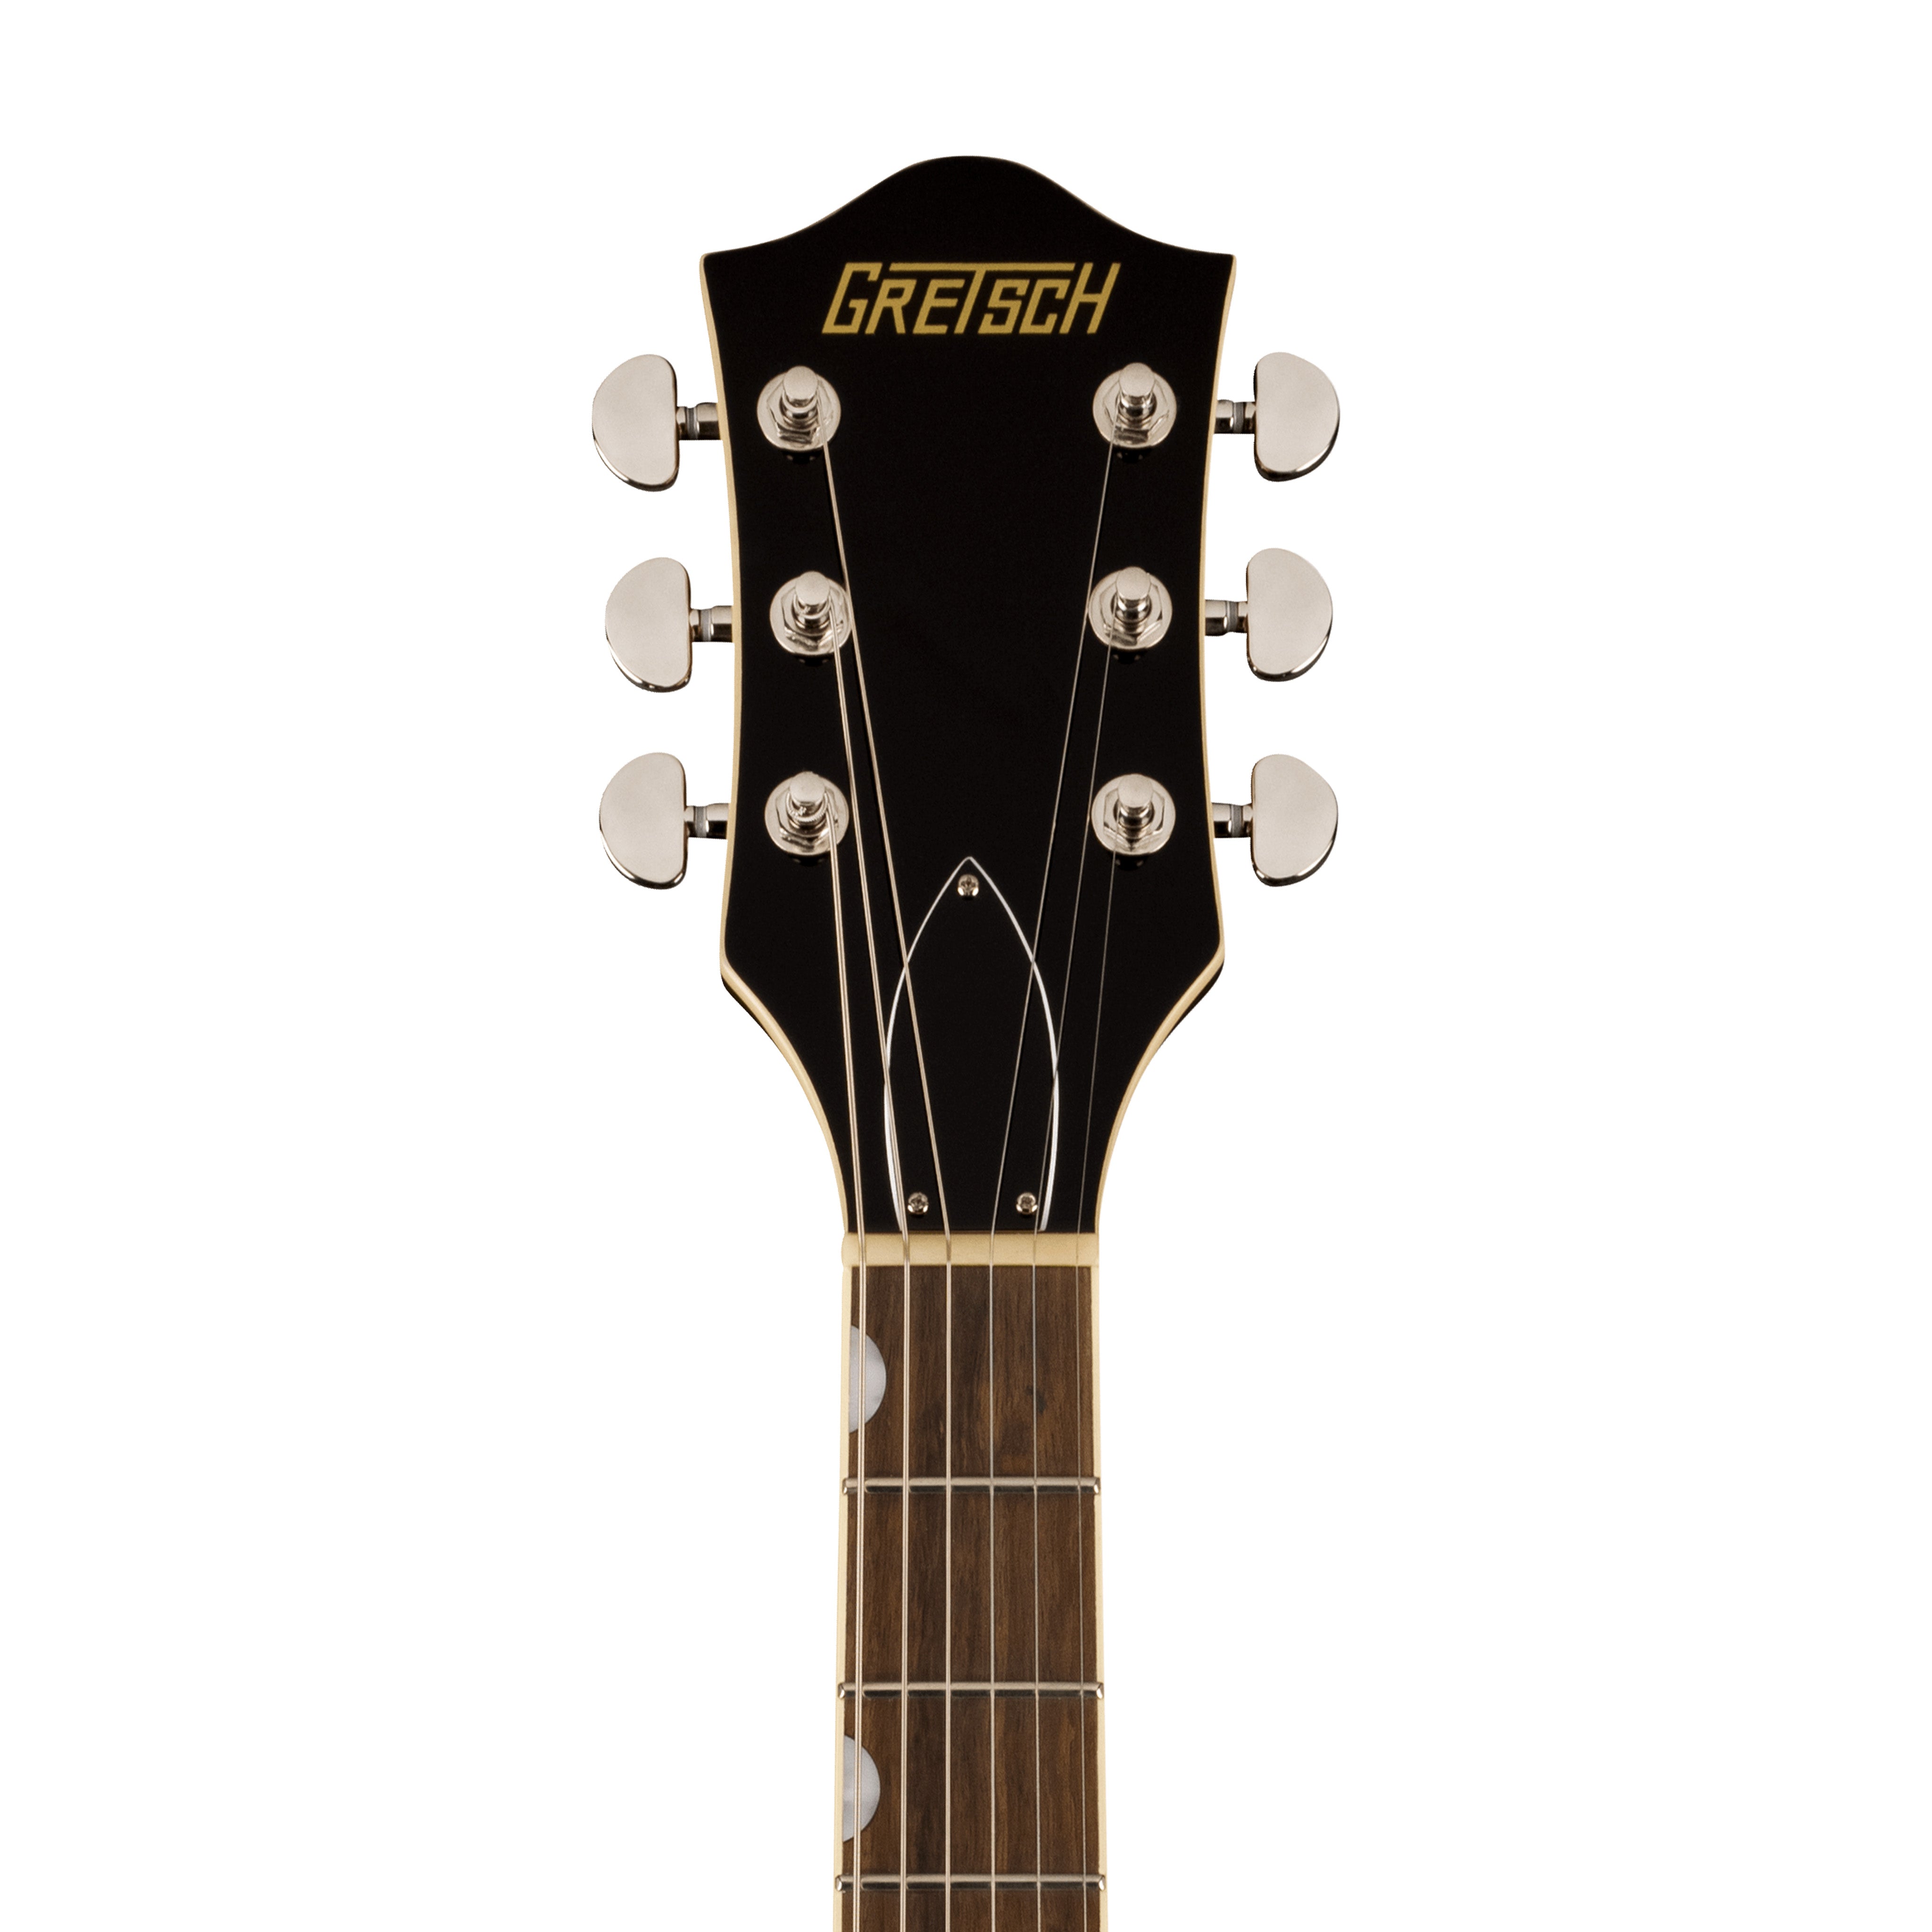 Gretsch G2622 Streamliner Center Block Double-Cut Electric Guitar, Fireburst